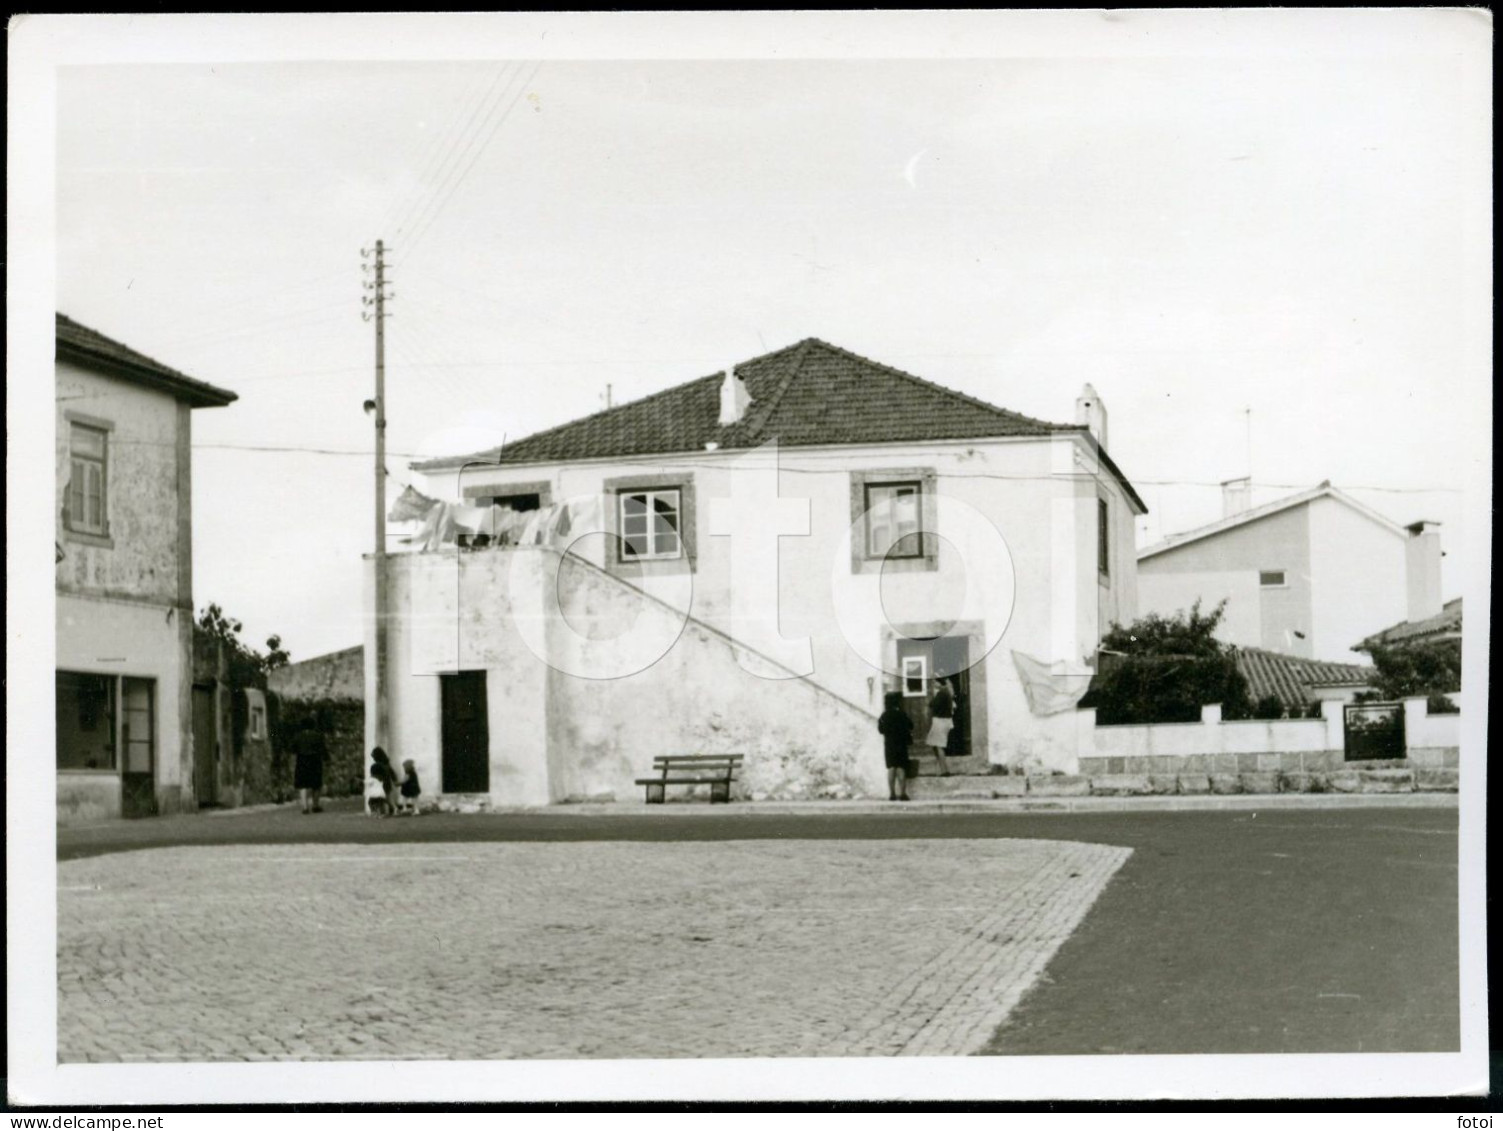 1961 ORIGINAL AMATEUR PHOTO FOTO COSTA CAPARICA ALMADA PORTUGAL AT398 - Lieux